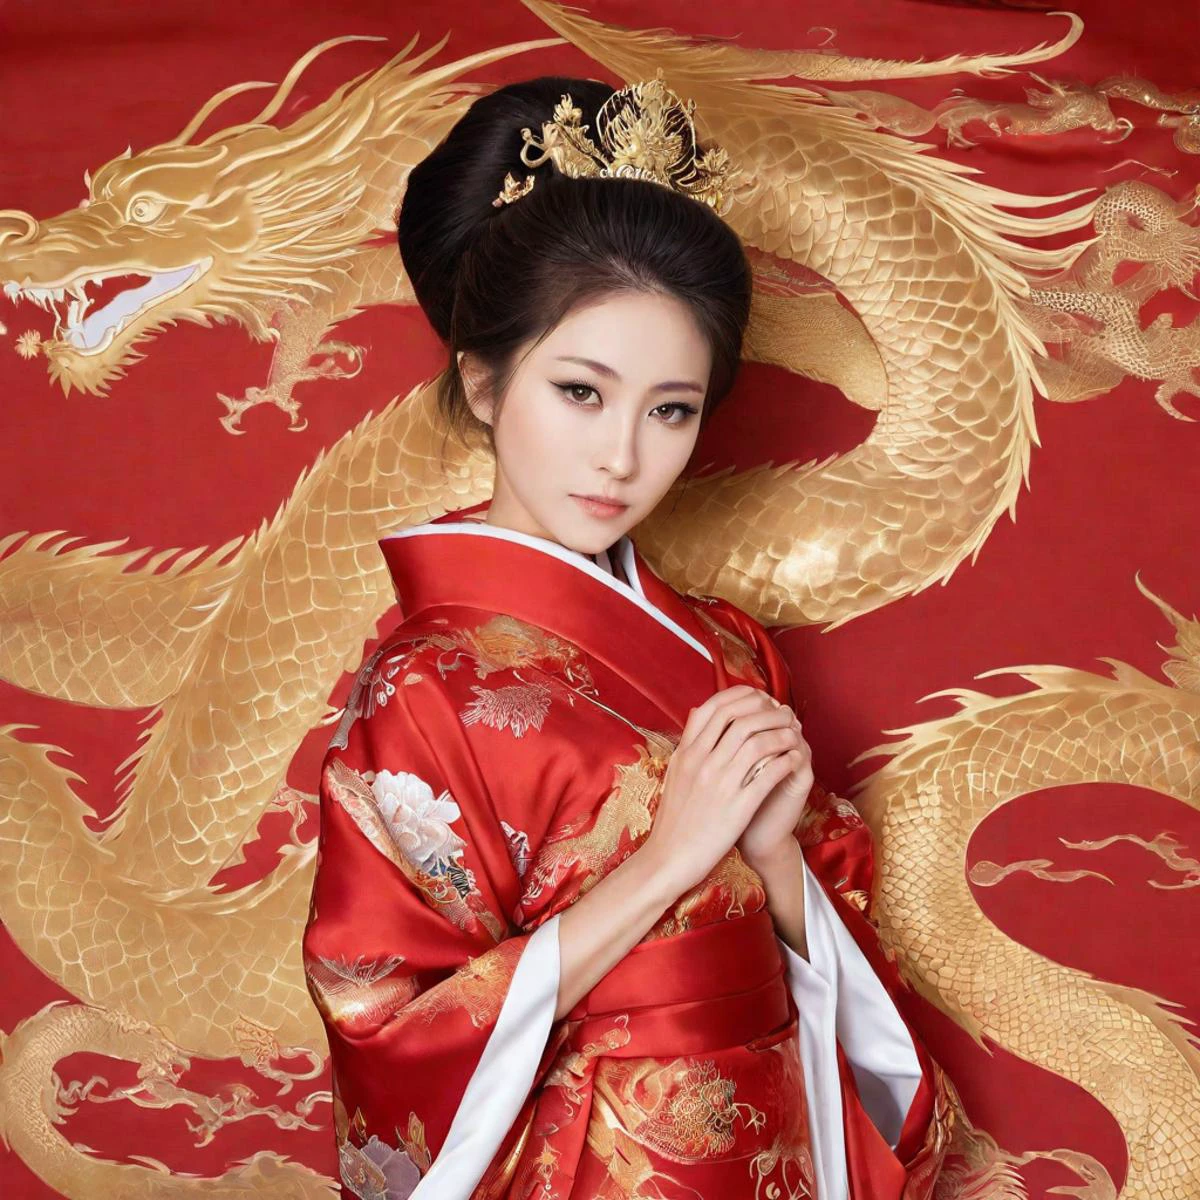 أميرة يابانية جميلة ترتدي كيمونو من الحرير الأحمر مع نمط تنين ذهبي